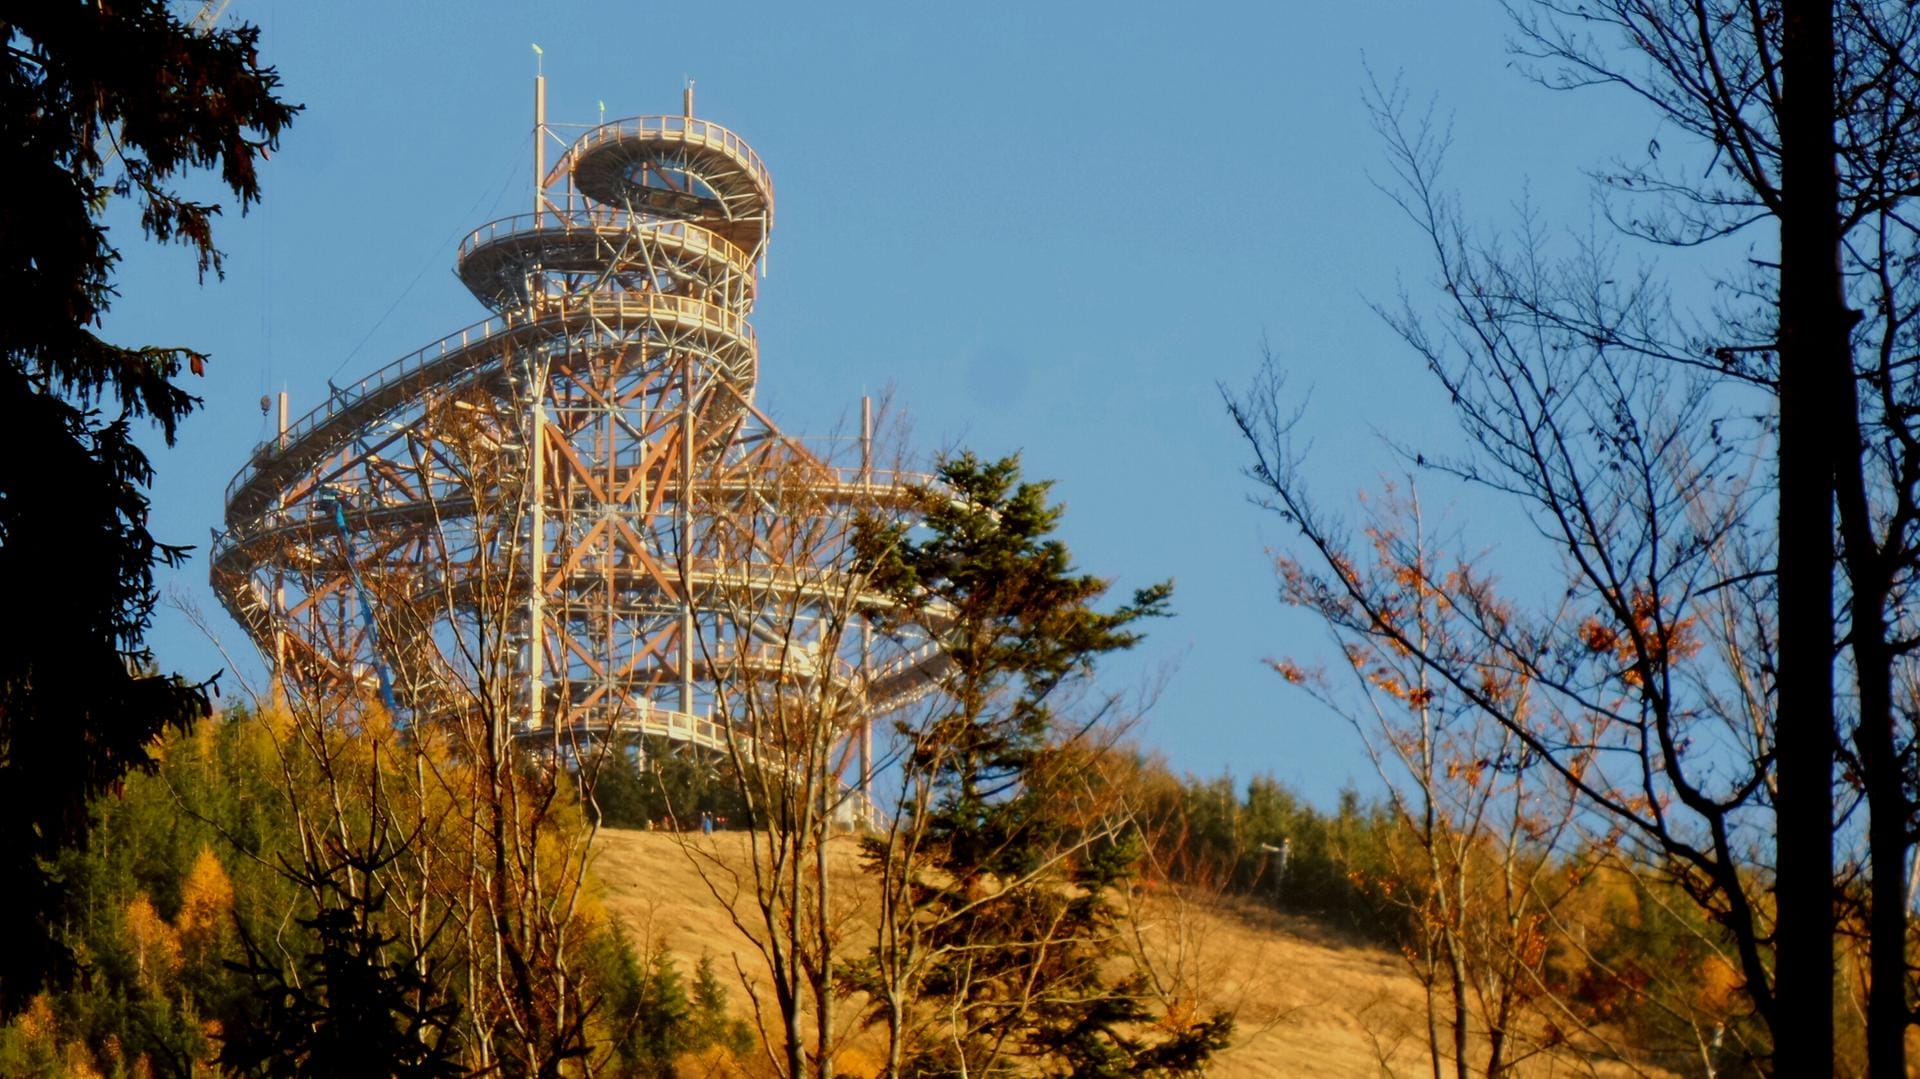 Ein Wirrwarr aus Holz und Stahl - so sieht die 55 Meter hohe Turmkonstruktion in Dolní Morava aus der Ferne betrachtet aus.